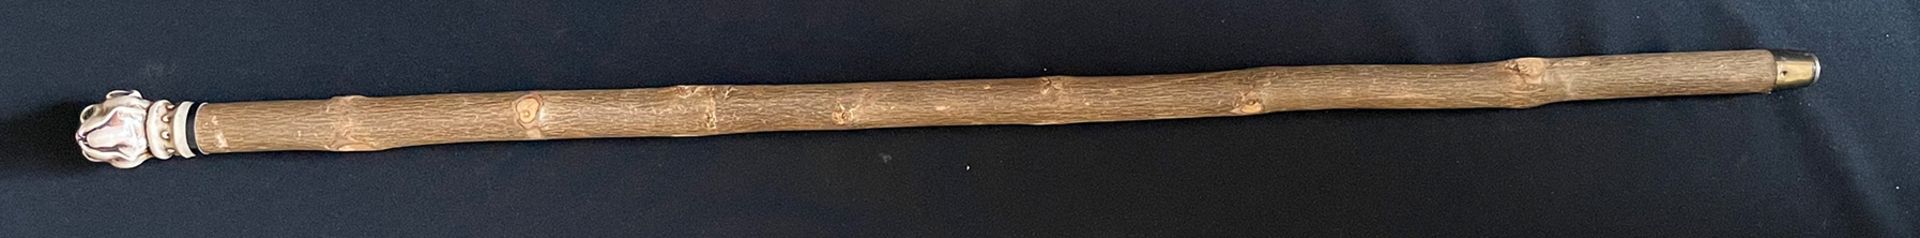 Gehstock, Holz, mit Bulldoggenkopf, Kunststoff, Altersspuren, 92 cm, Kopf 5,5 cm - Image 4 of 4